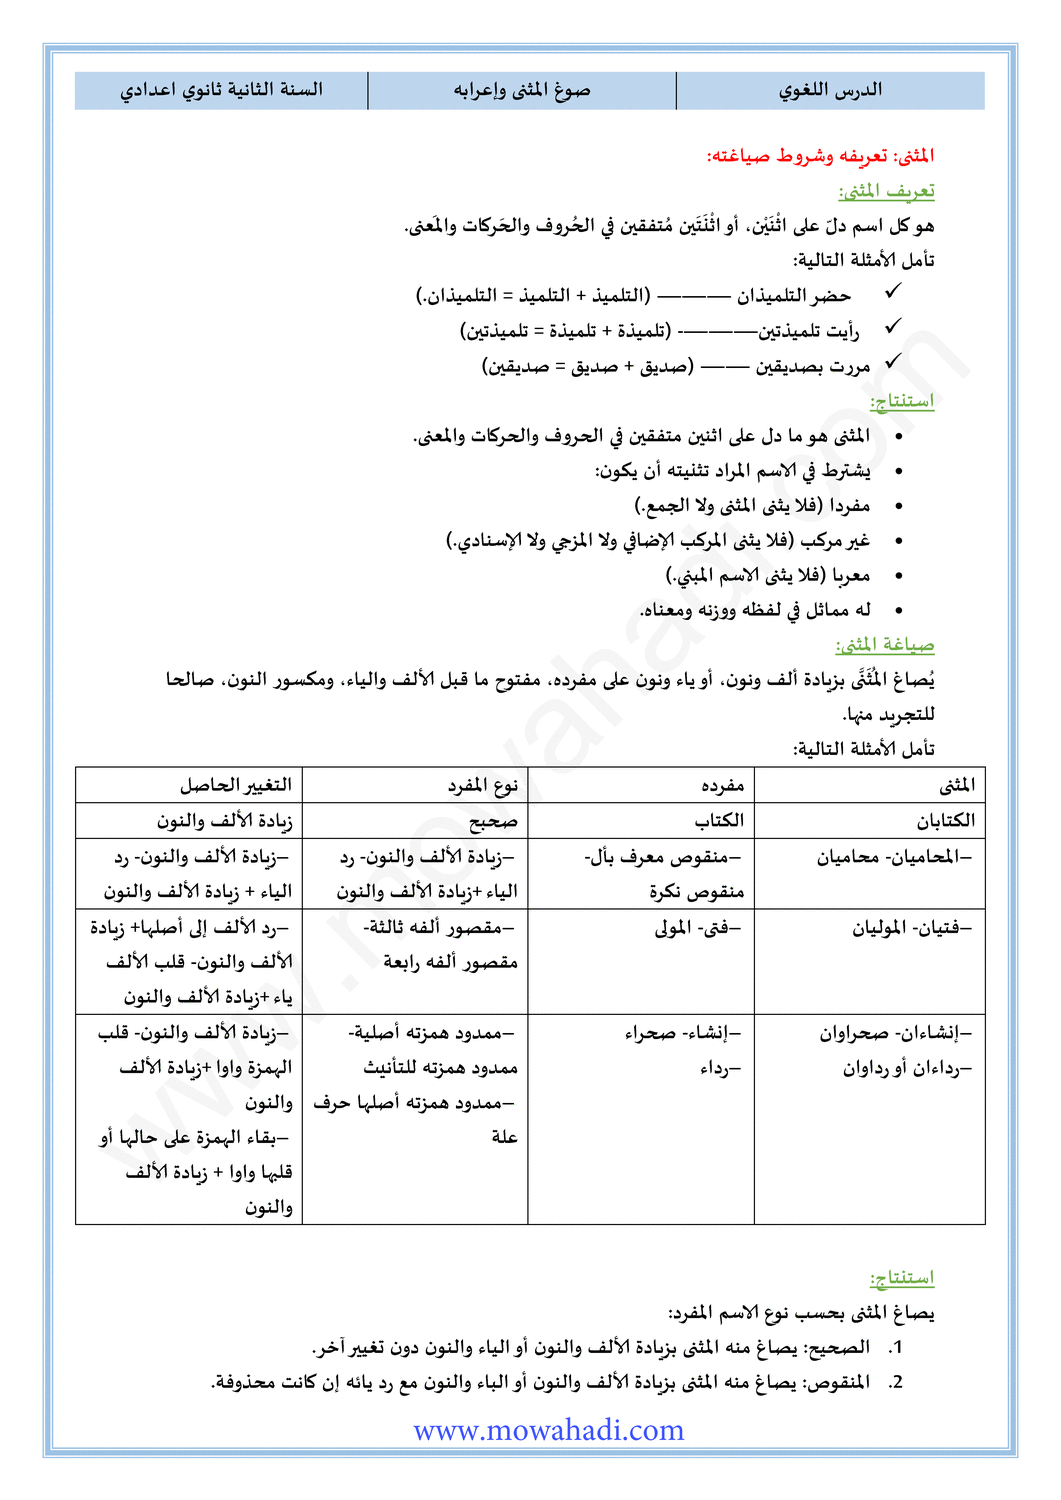 الدرس اللغوي صوغ المثنى و إعرابه للسنة الثانية اعدادي في مادة اللغة العربية